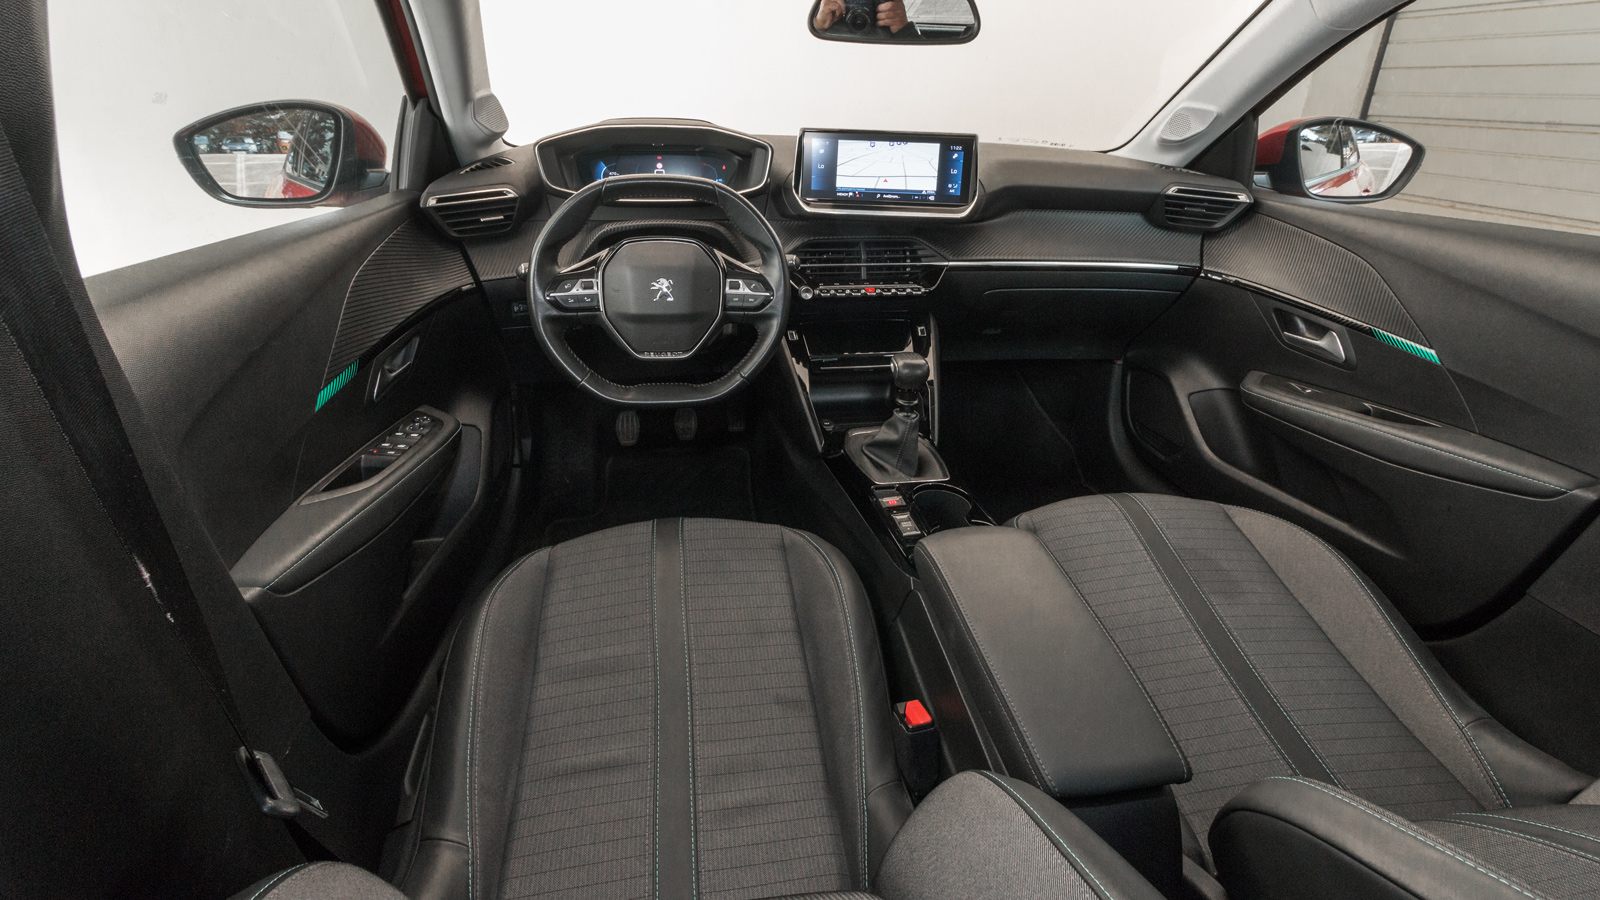 Peugeot 208 VS VW Polo: Ξεπέρασαν οι Γάλλοι τους Γερμανούς;